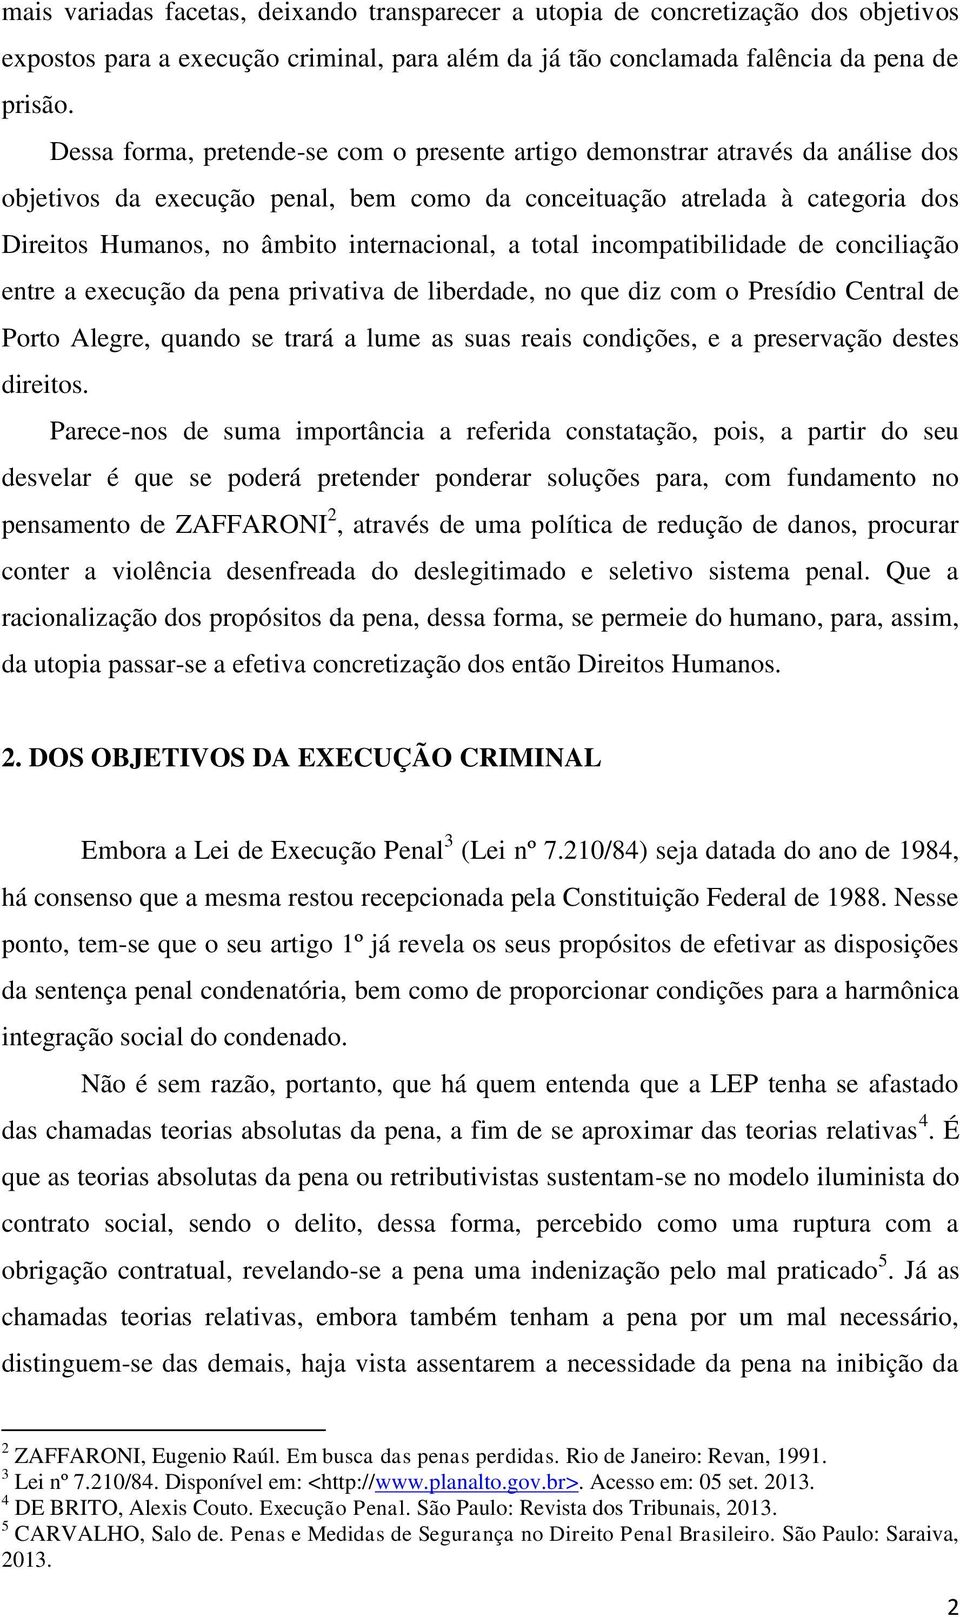 internacional, a total incompatibilidade de conciliação entre a execução da pena privativa de liberdade, no que diz com o Presídio Central de Porto Alegre, quando se trará a lume as suas reais